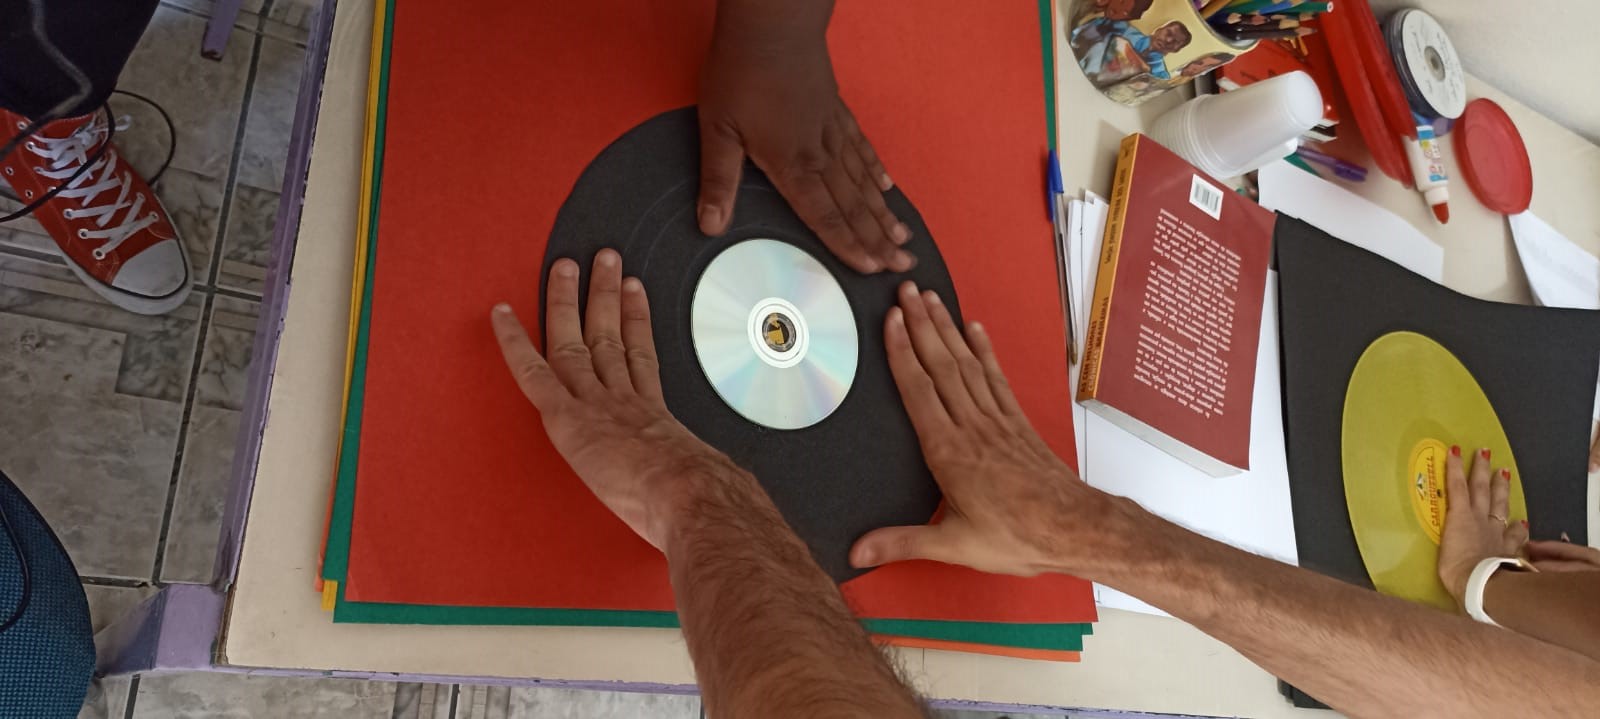 Em uma mesa coberta por um tecido vermelho, duas mãos seguram um disco de vinil confeccionado com papel preto e um cd no meio. A mão de outra pessoa também segura o disco.